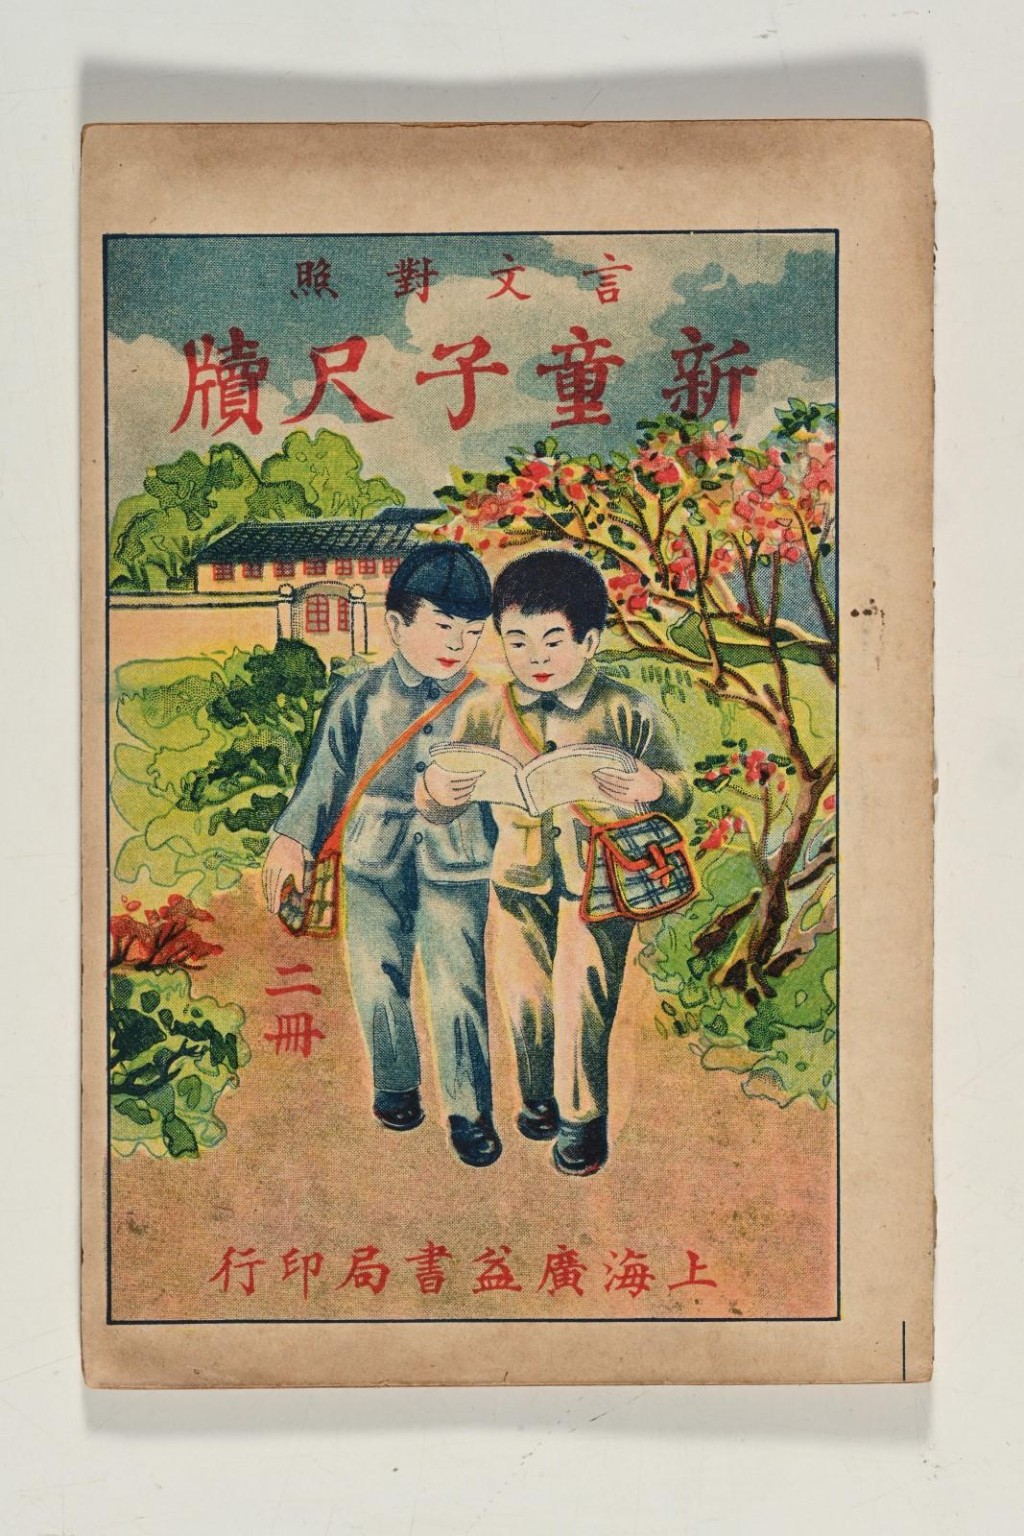 1932年上海广益书局印行的《新童子尺牍》。政府新闻处